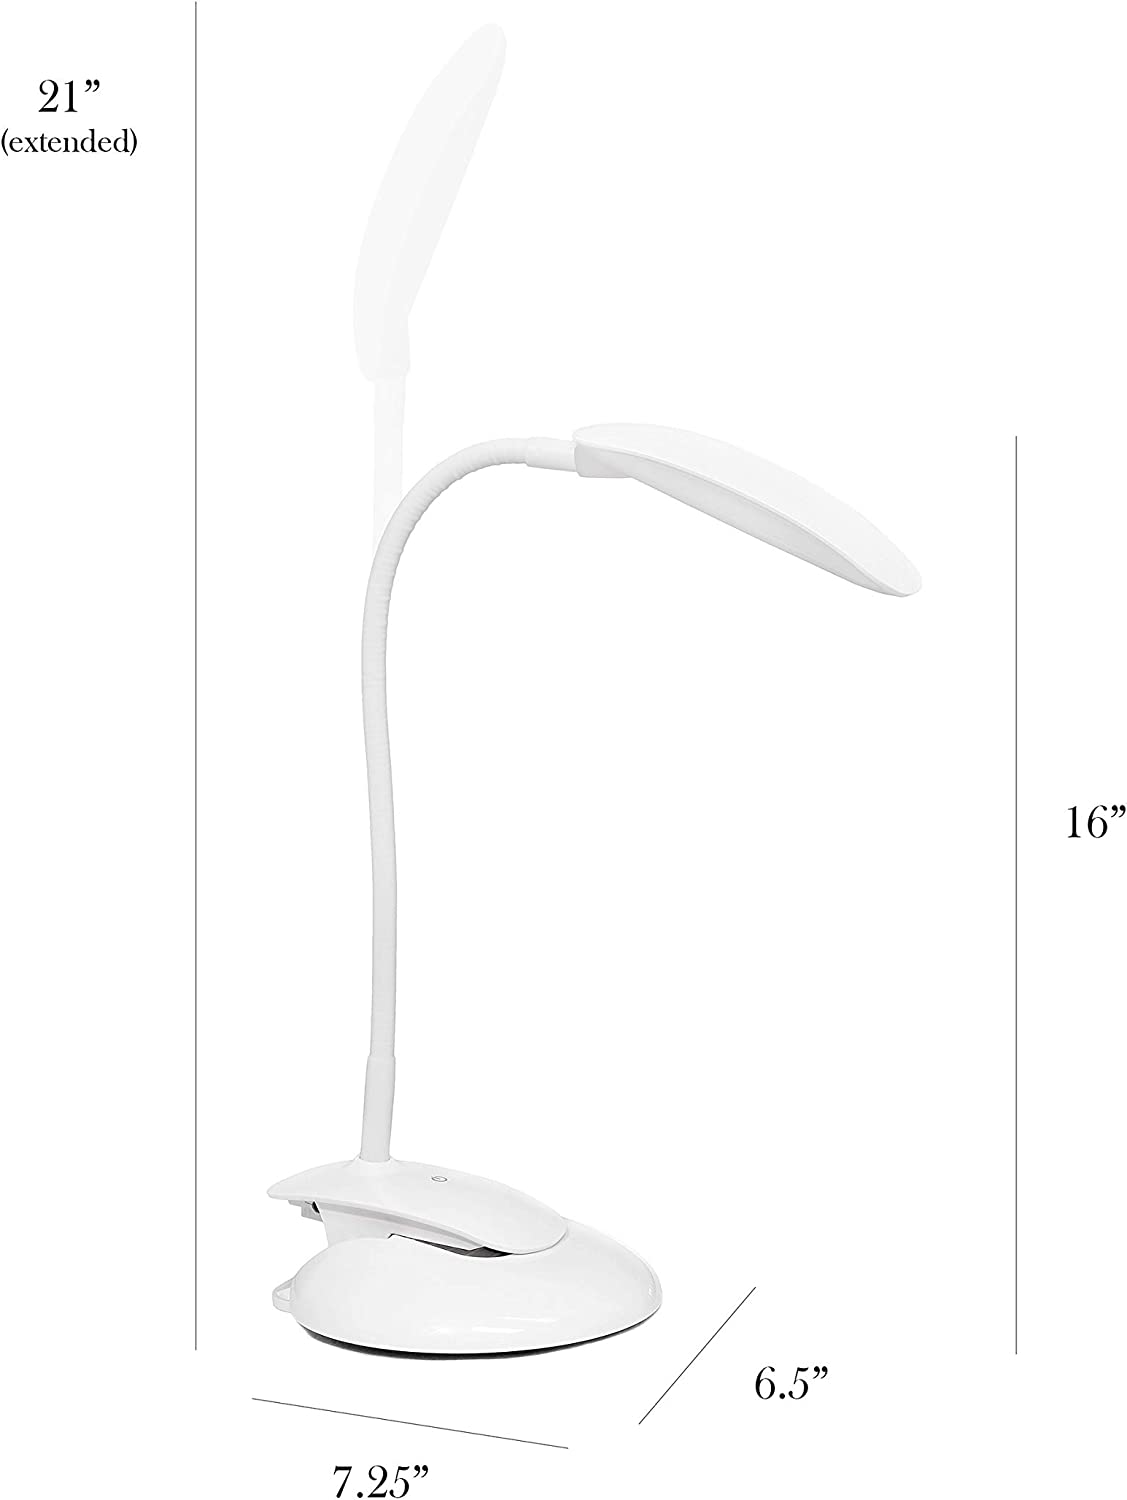 Simple Designs LD2021-WHT Flexible Rounded Clip Light LED Desk Lamp, White